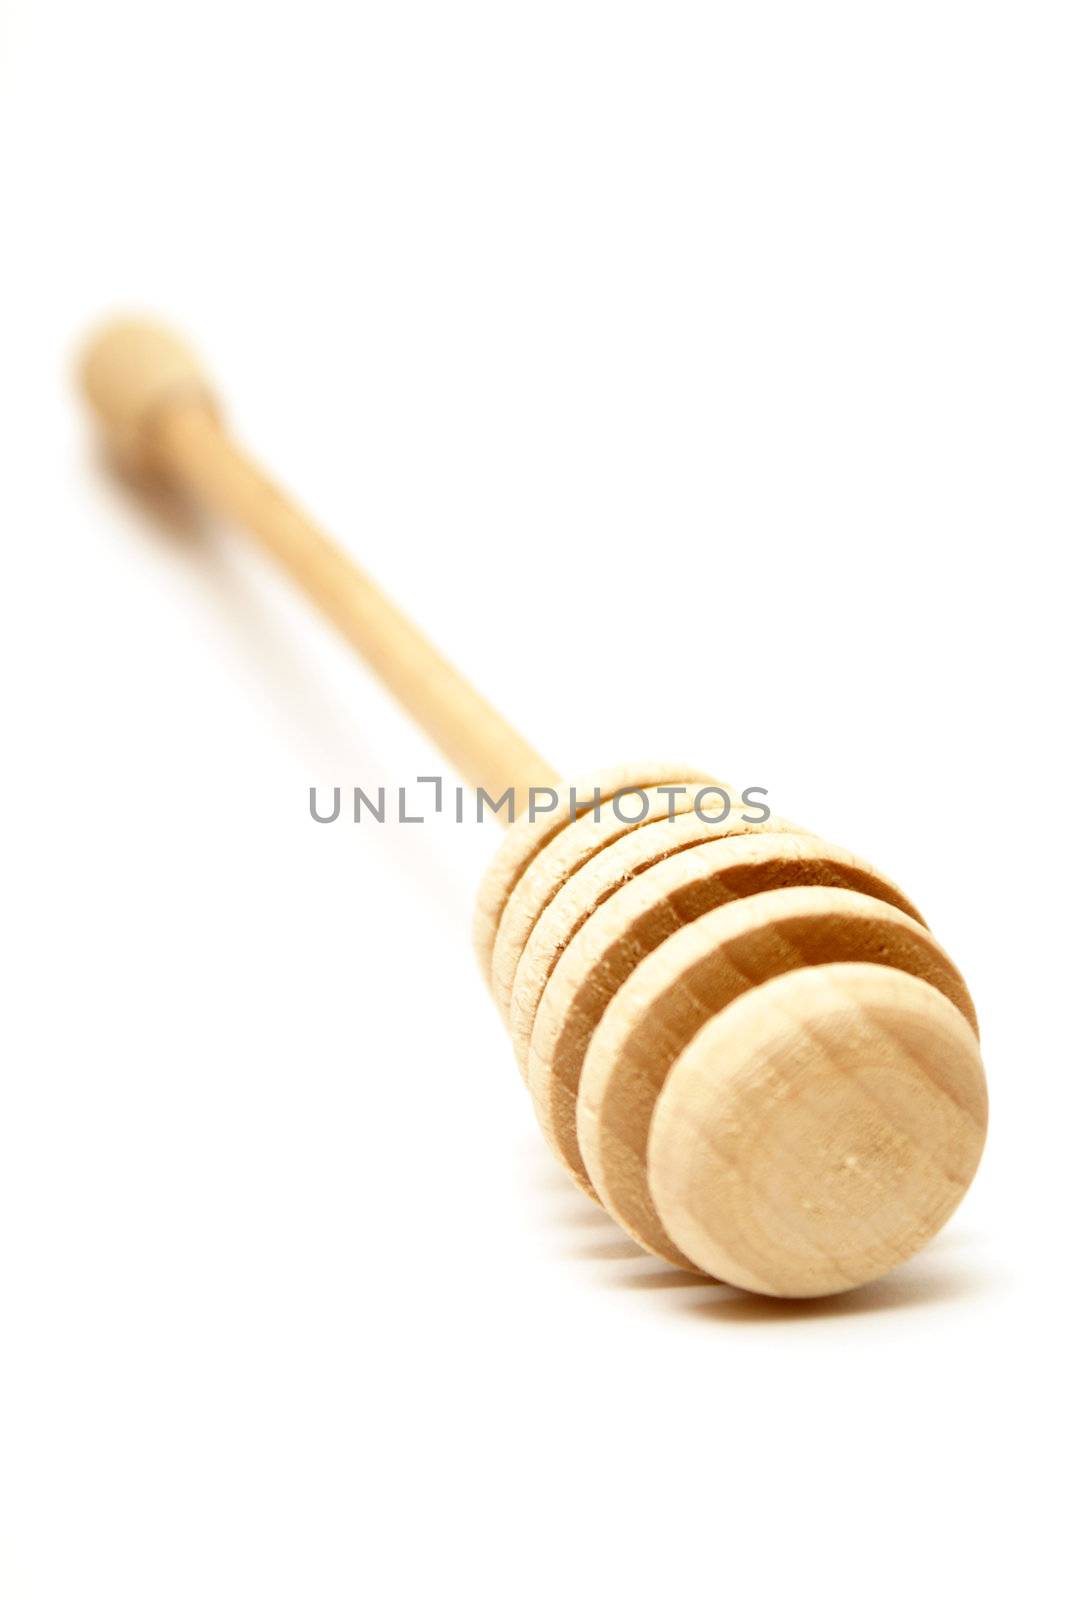 A shallow DOF shot of a handmade wooden honey stick.